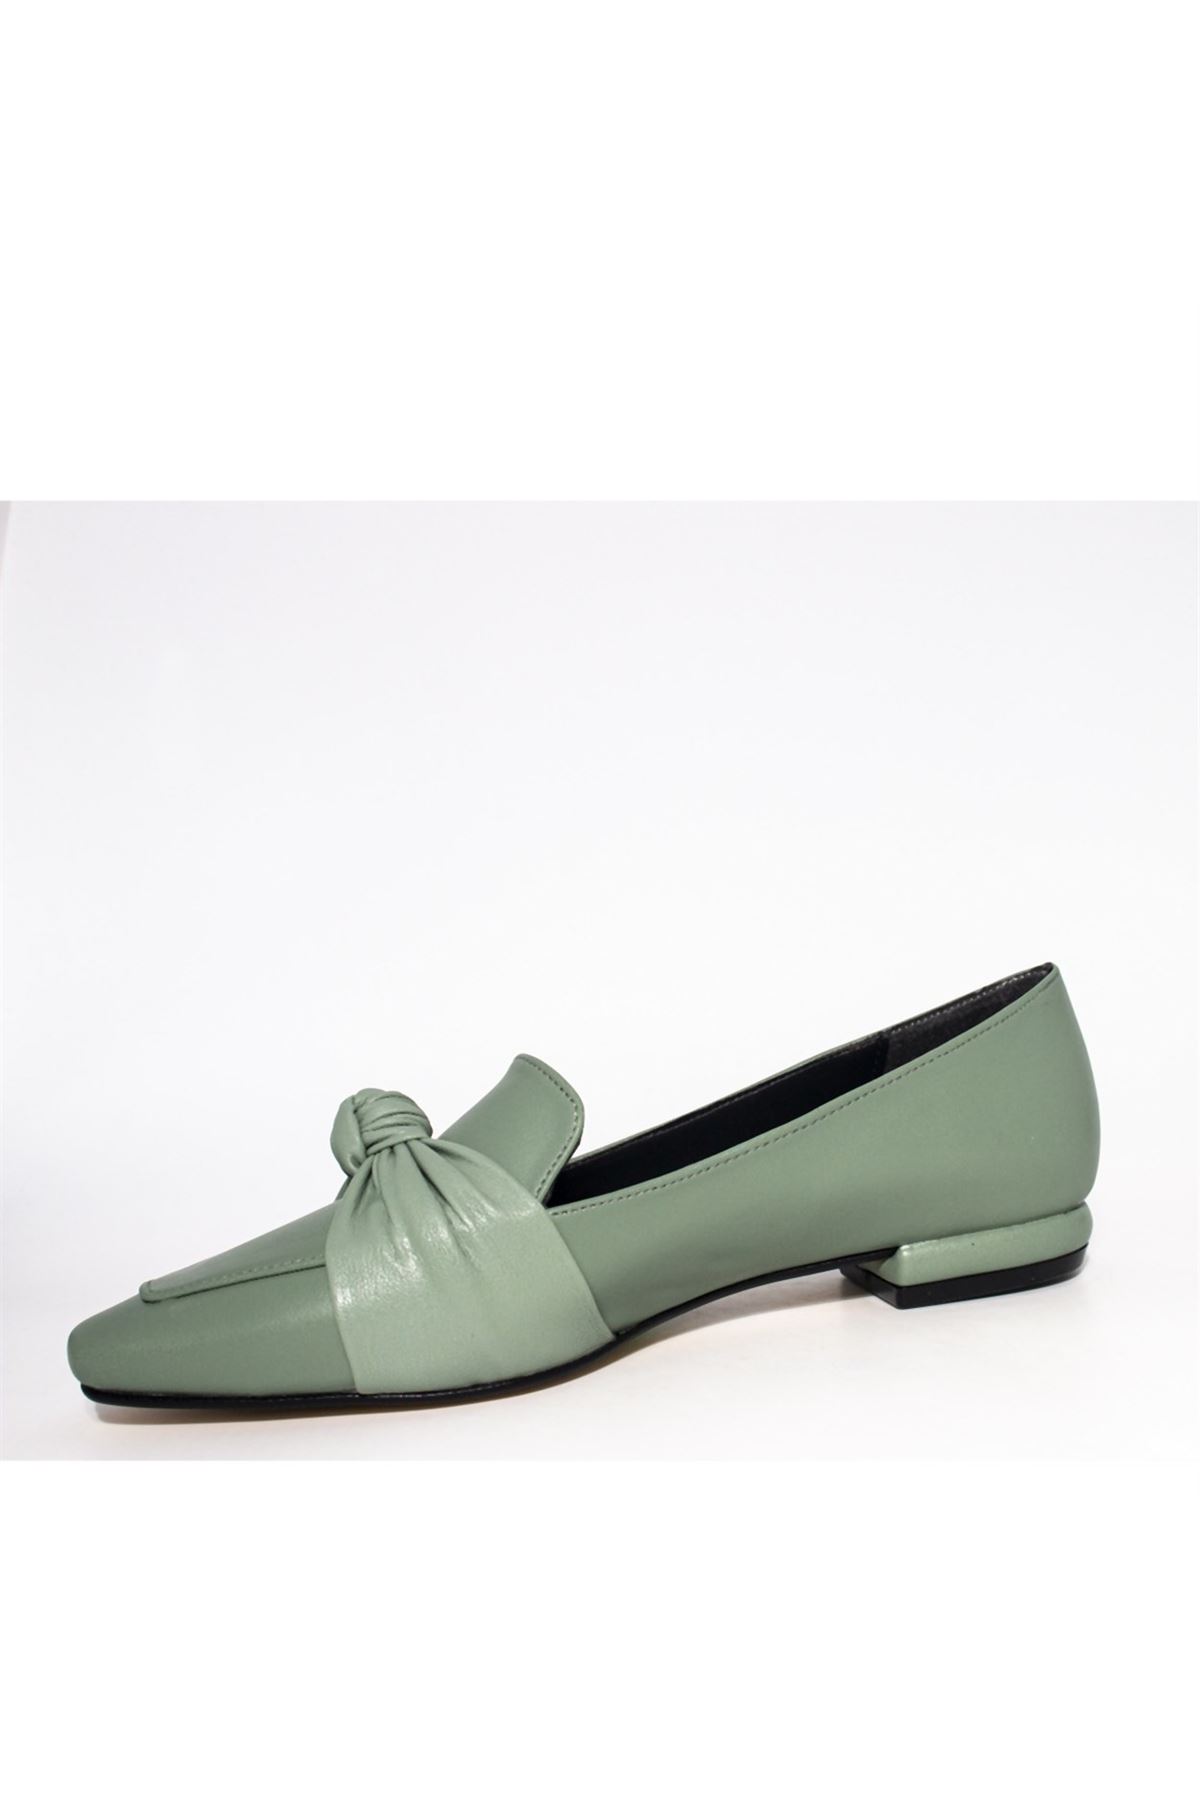 Kadın Önden Düğümlü Loafer Ayakkabı - Mint Yeşili